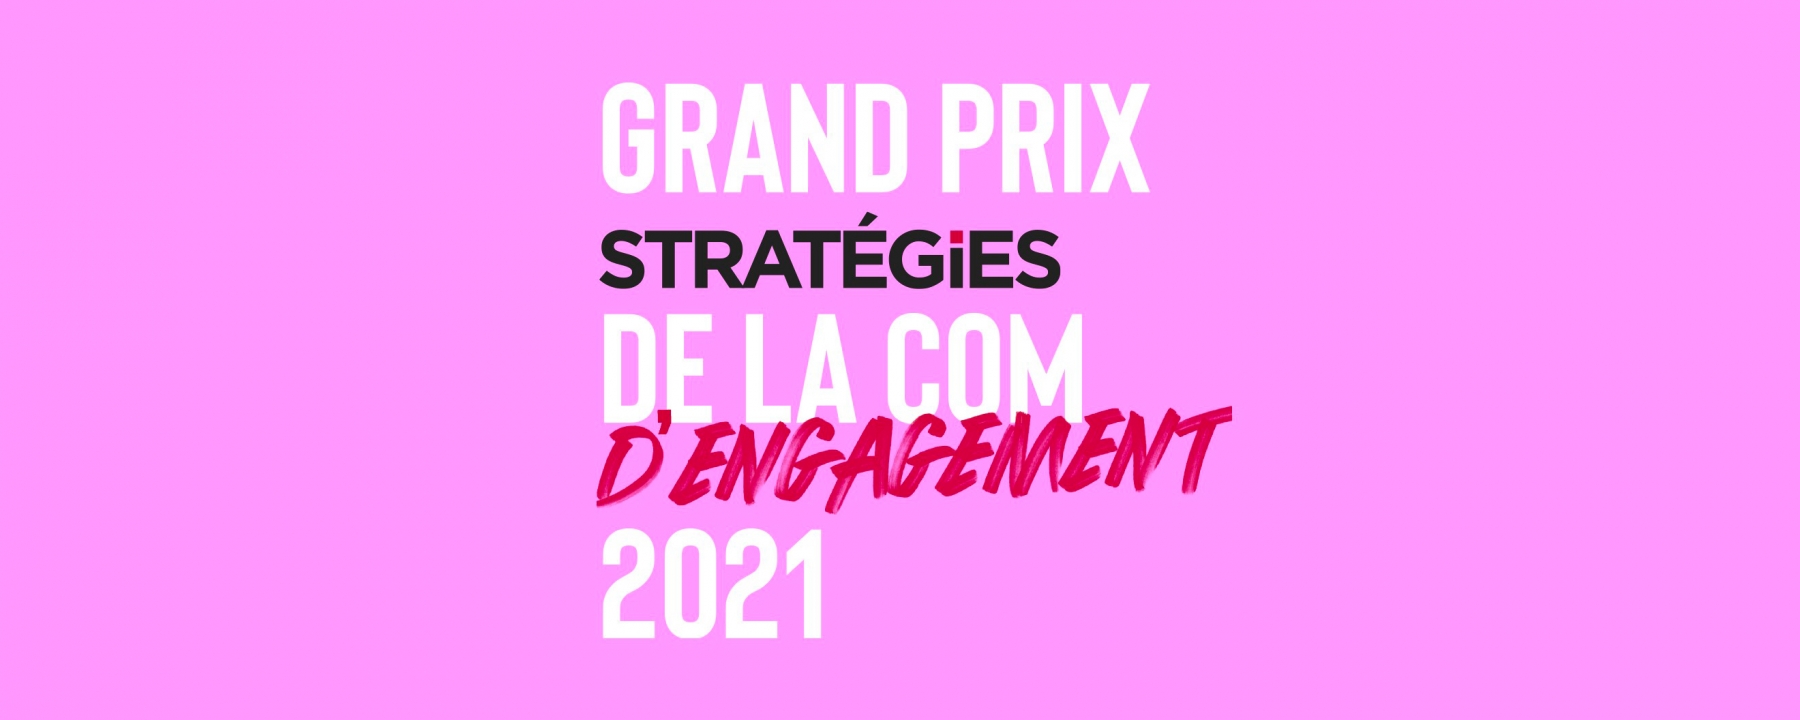 GRAND PRIX STRATÉGIES DE LA COMMUNICATION D'ENGAGEMENT, le 24 mars 2021 par Stratégies 